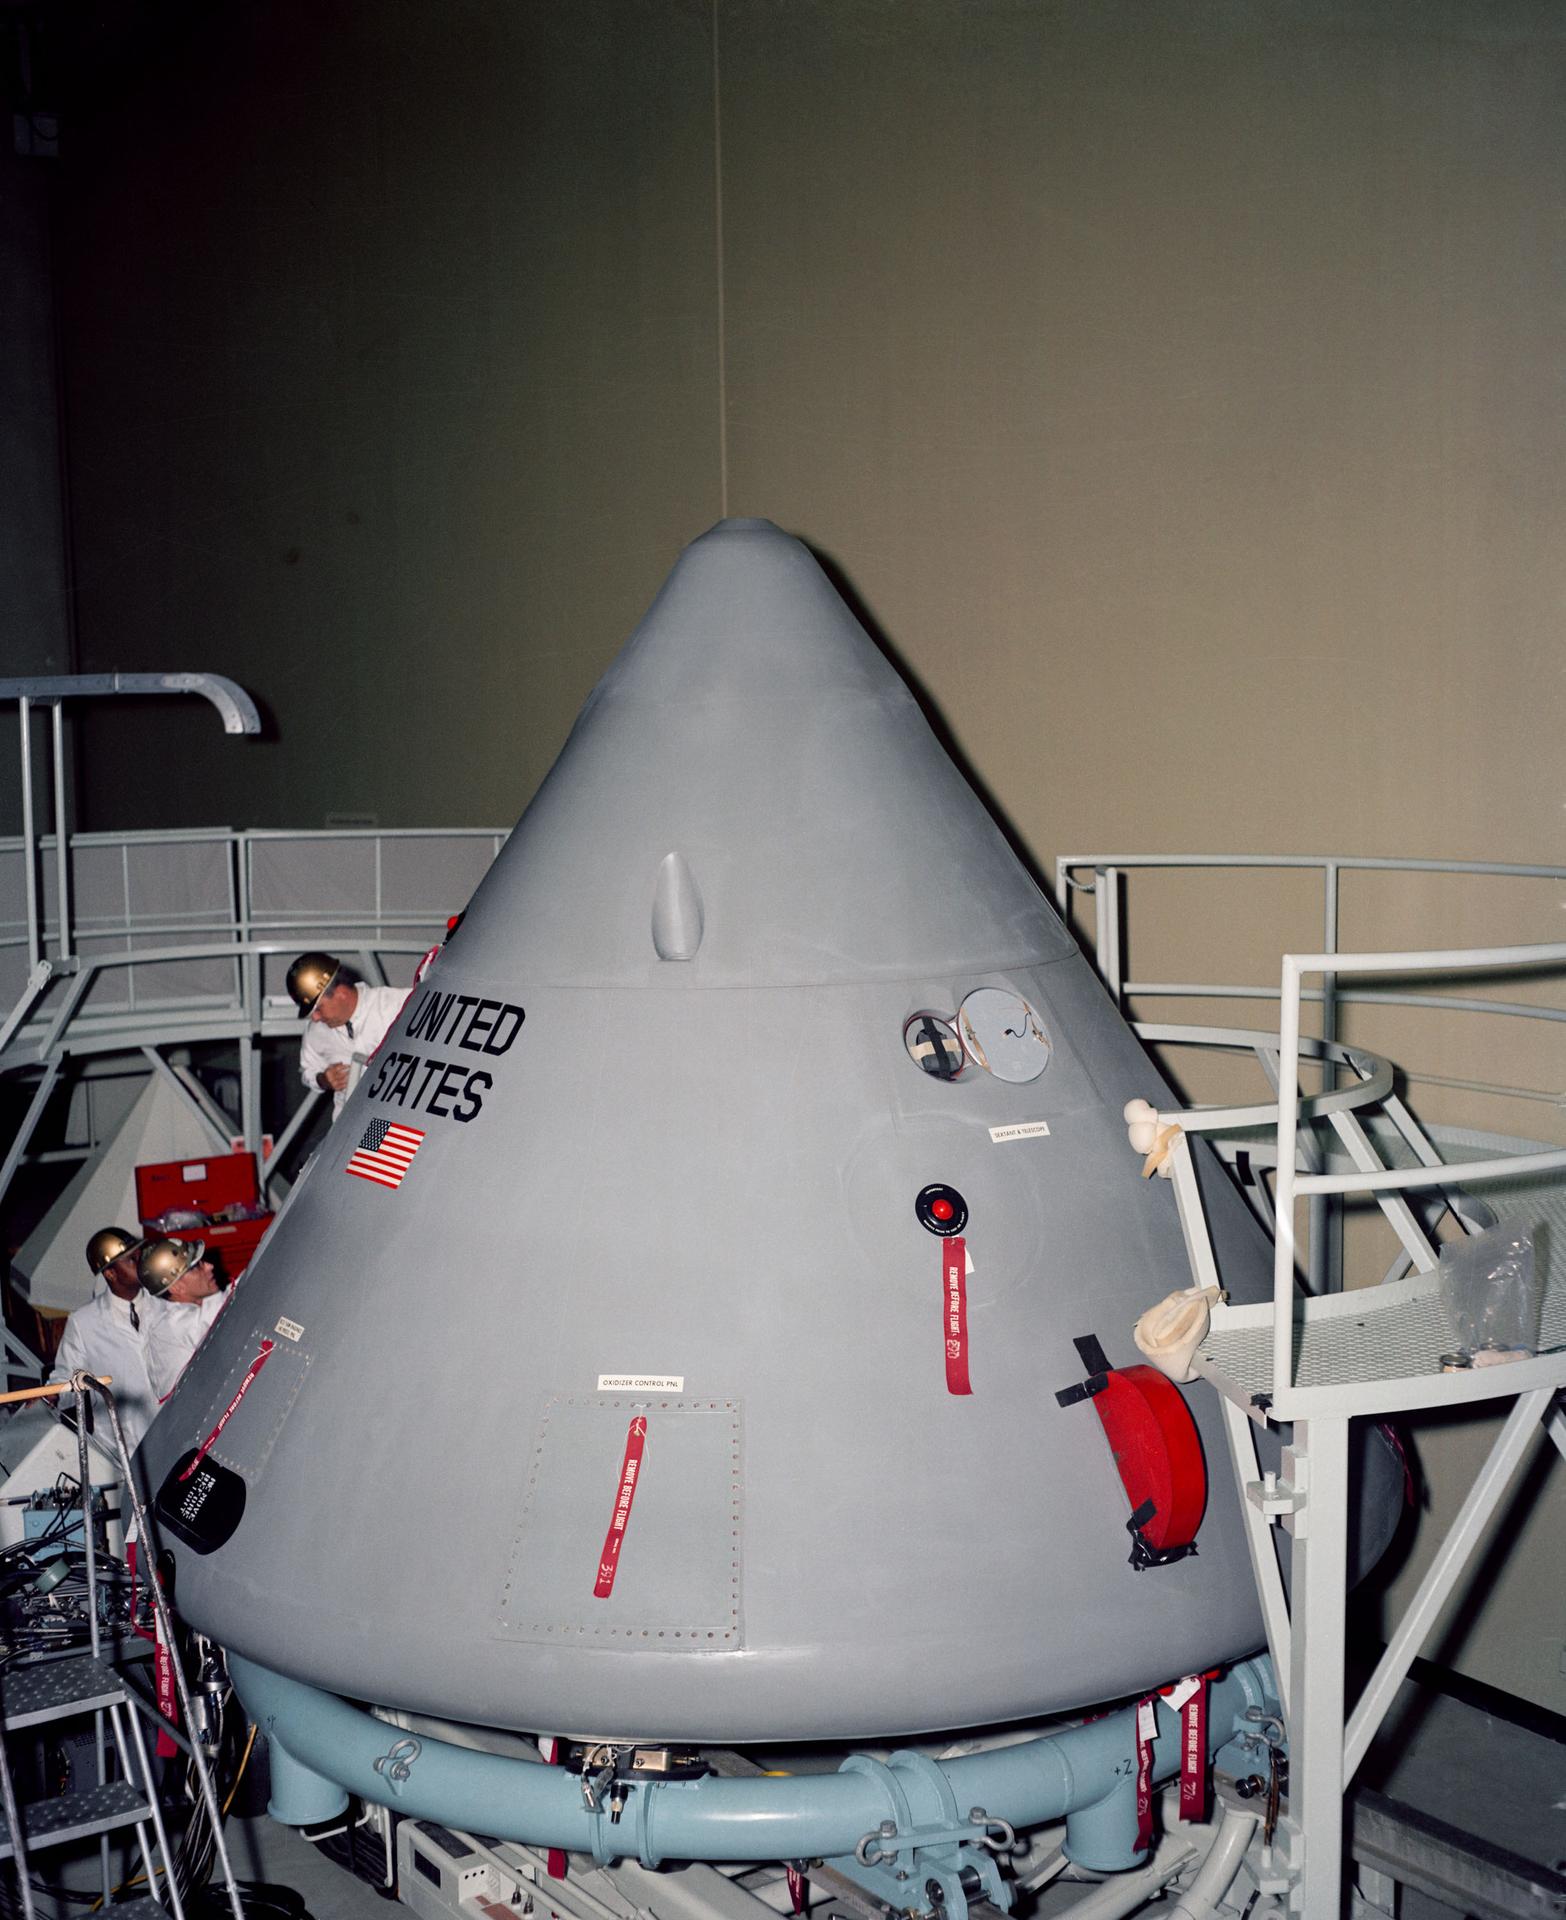 The Apollo 1 capsule before the fire.